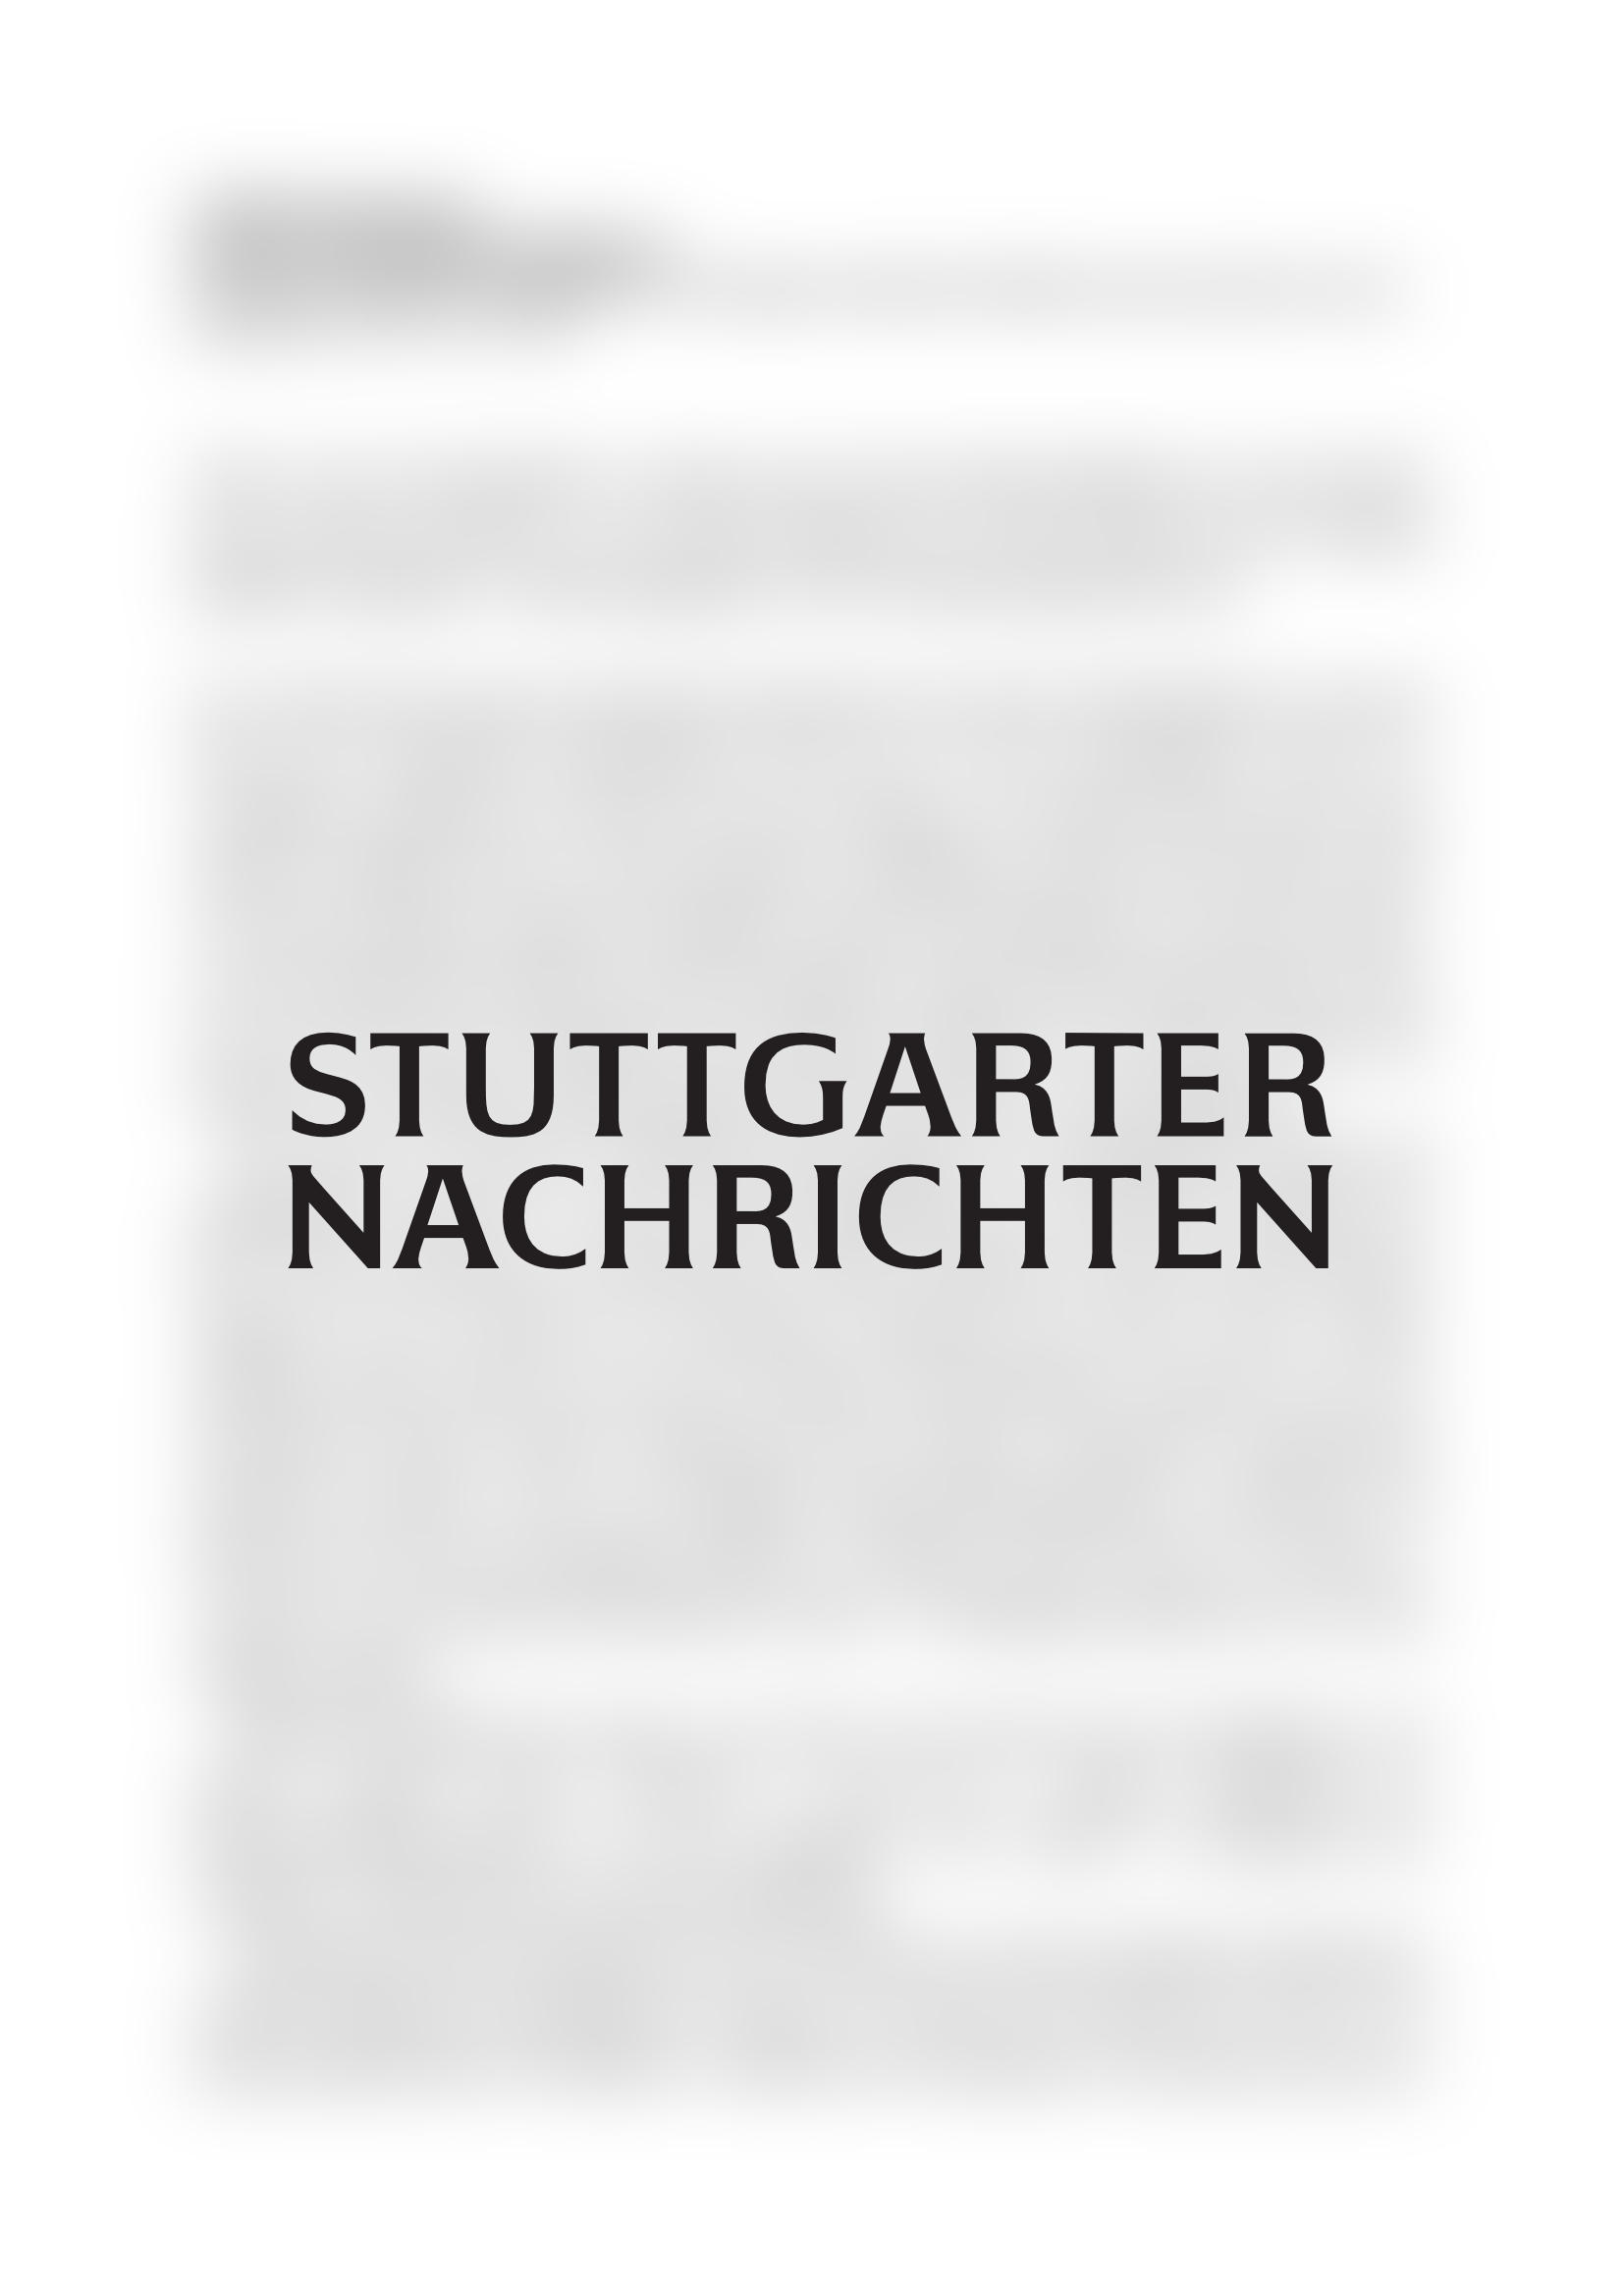 Vorschau - Stuttgarter Nachrichten